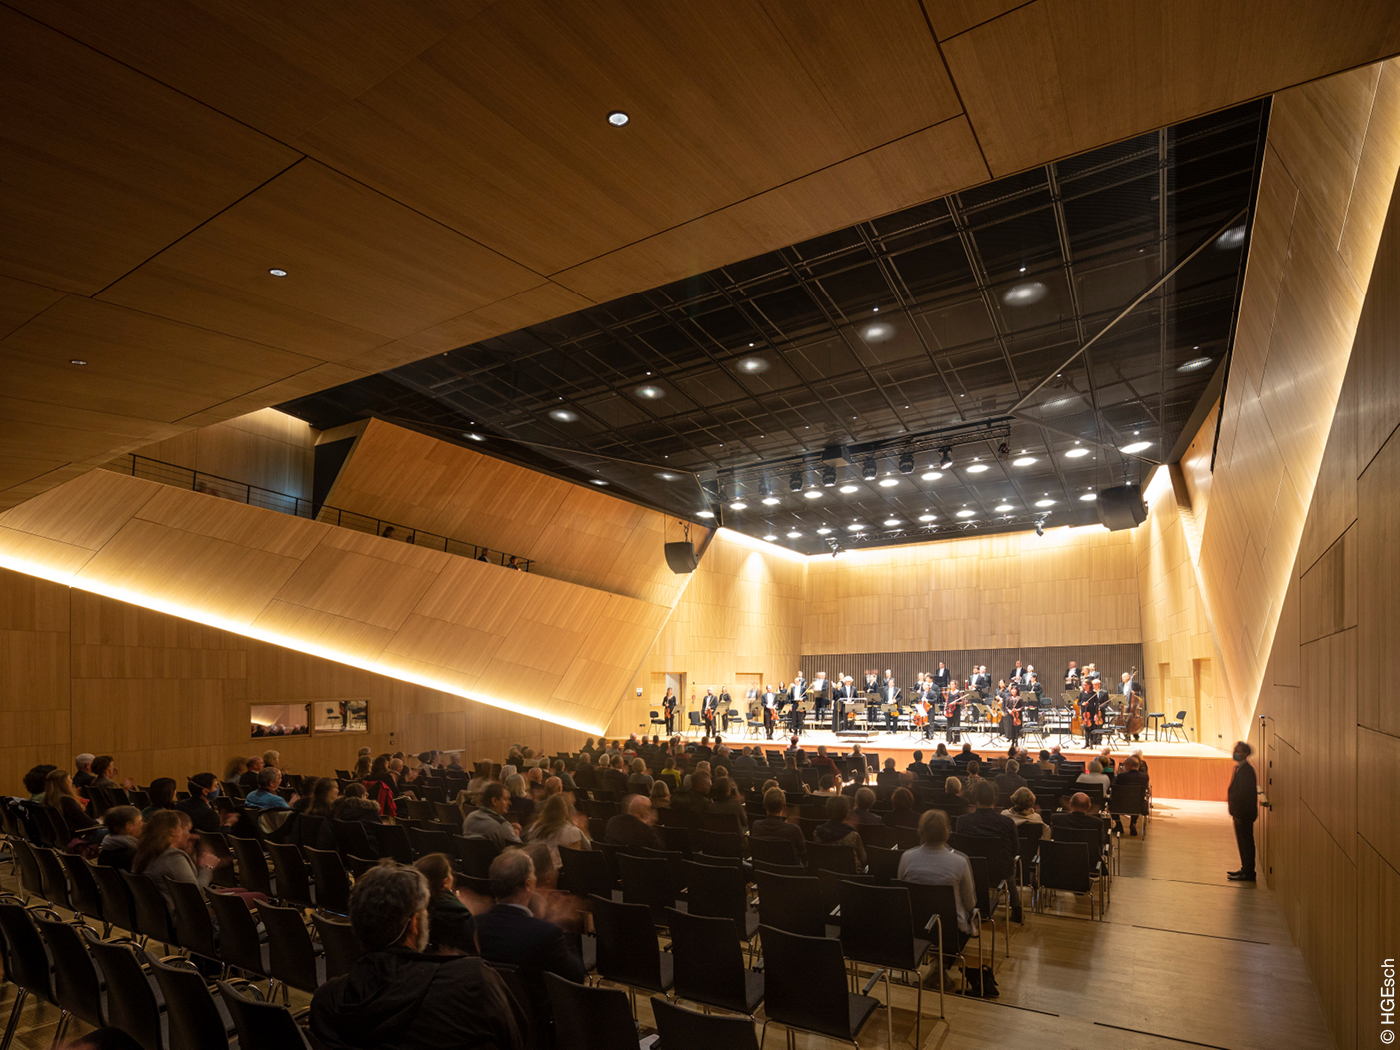 Innenraum mit Orchester und Publikum der Tauberphilharmonie